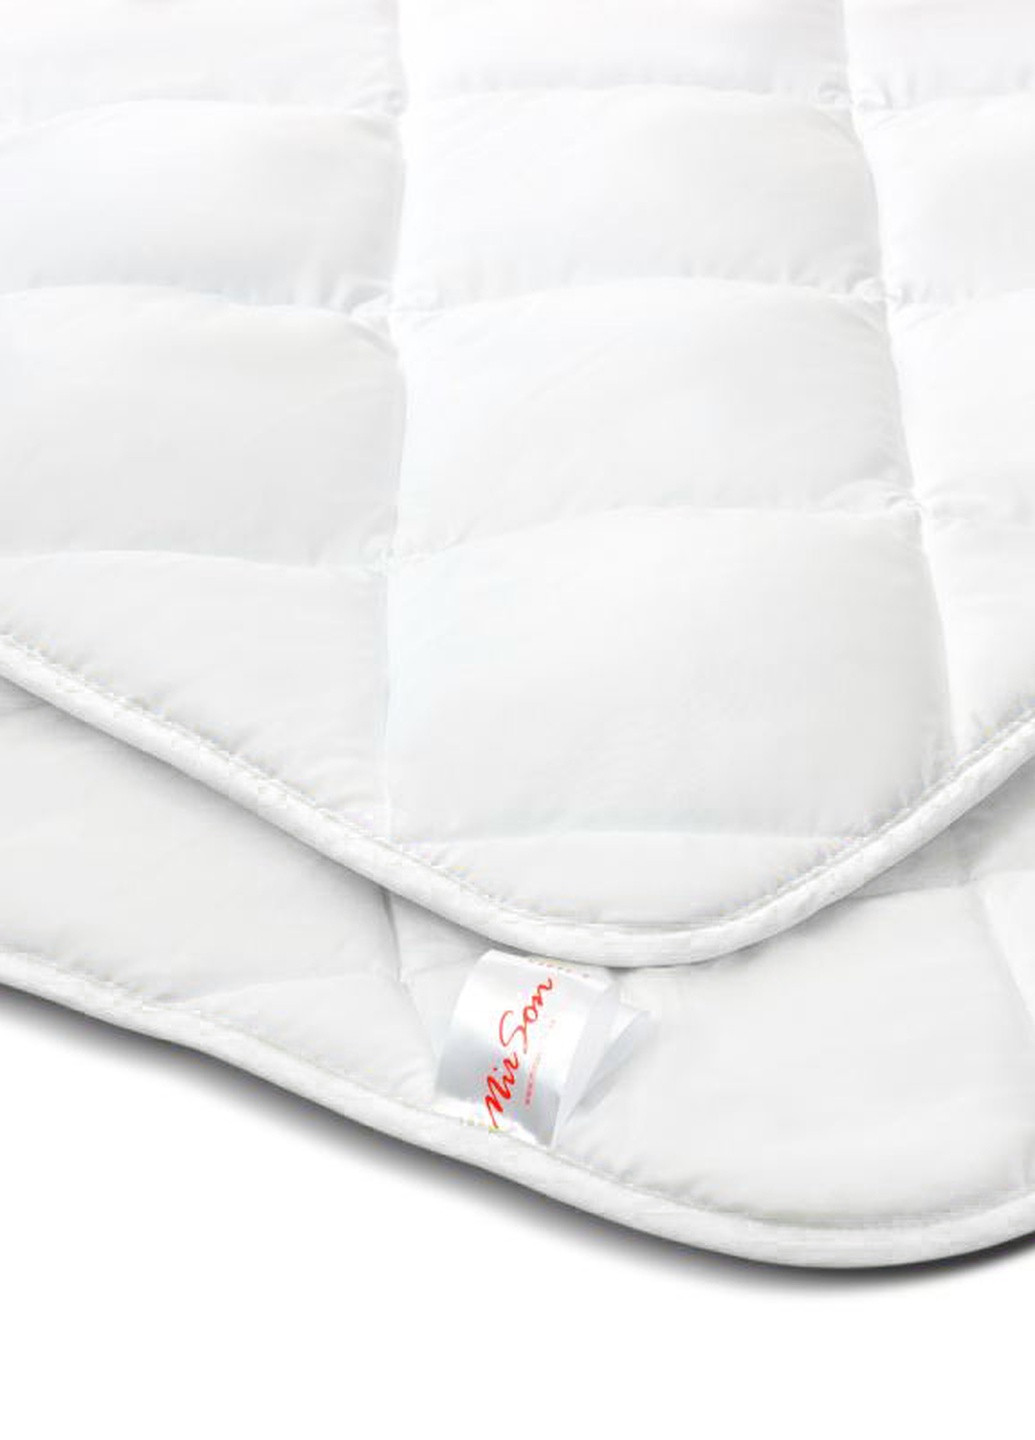 Одеяло хлопковое №1654 Eco Light White Всесезонное 200х220 (2200002652568) Mirson (258824101)